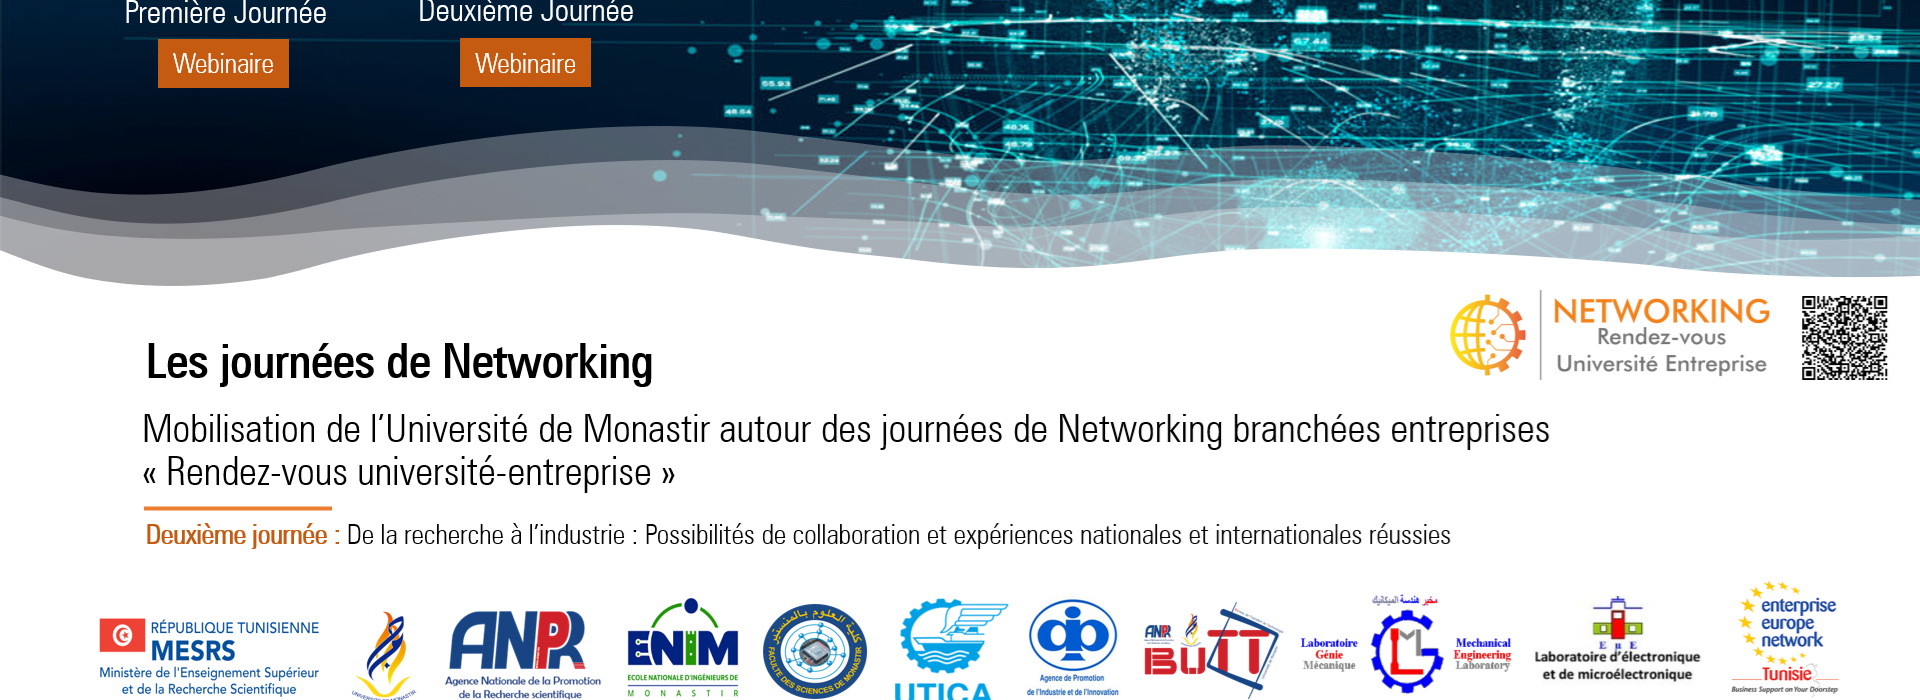 Deuxième journée de Networking : De la recherche à l'Industrie